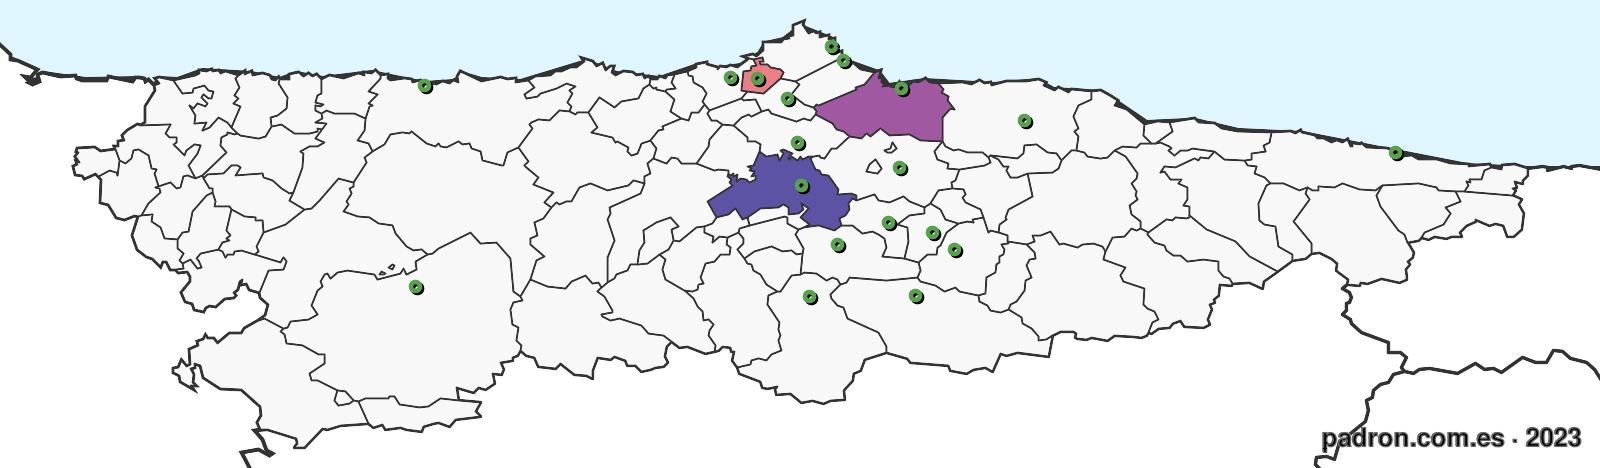 nepalíes en asturias.